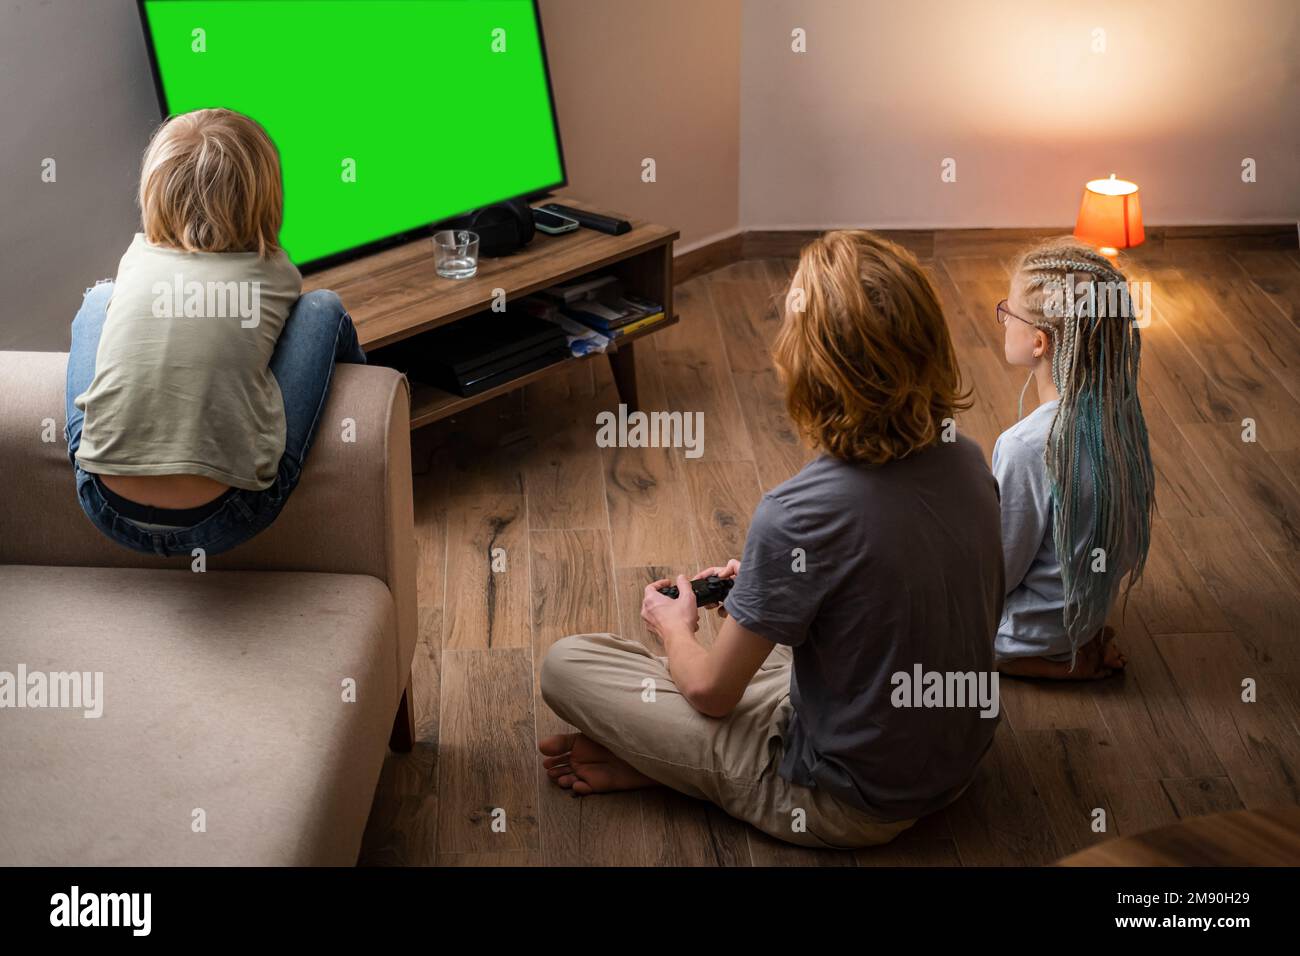 Trois enfants jouant au jeu vidéo Green Screen chromakey sur la console de télévision à l'aide de la manette tout en étant assis à la maison, frères et soeur assis sur le sol Banque D'Images